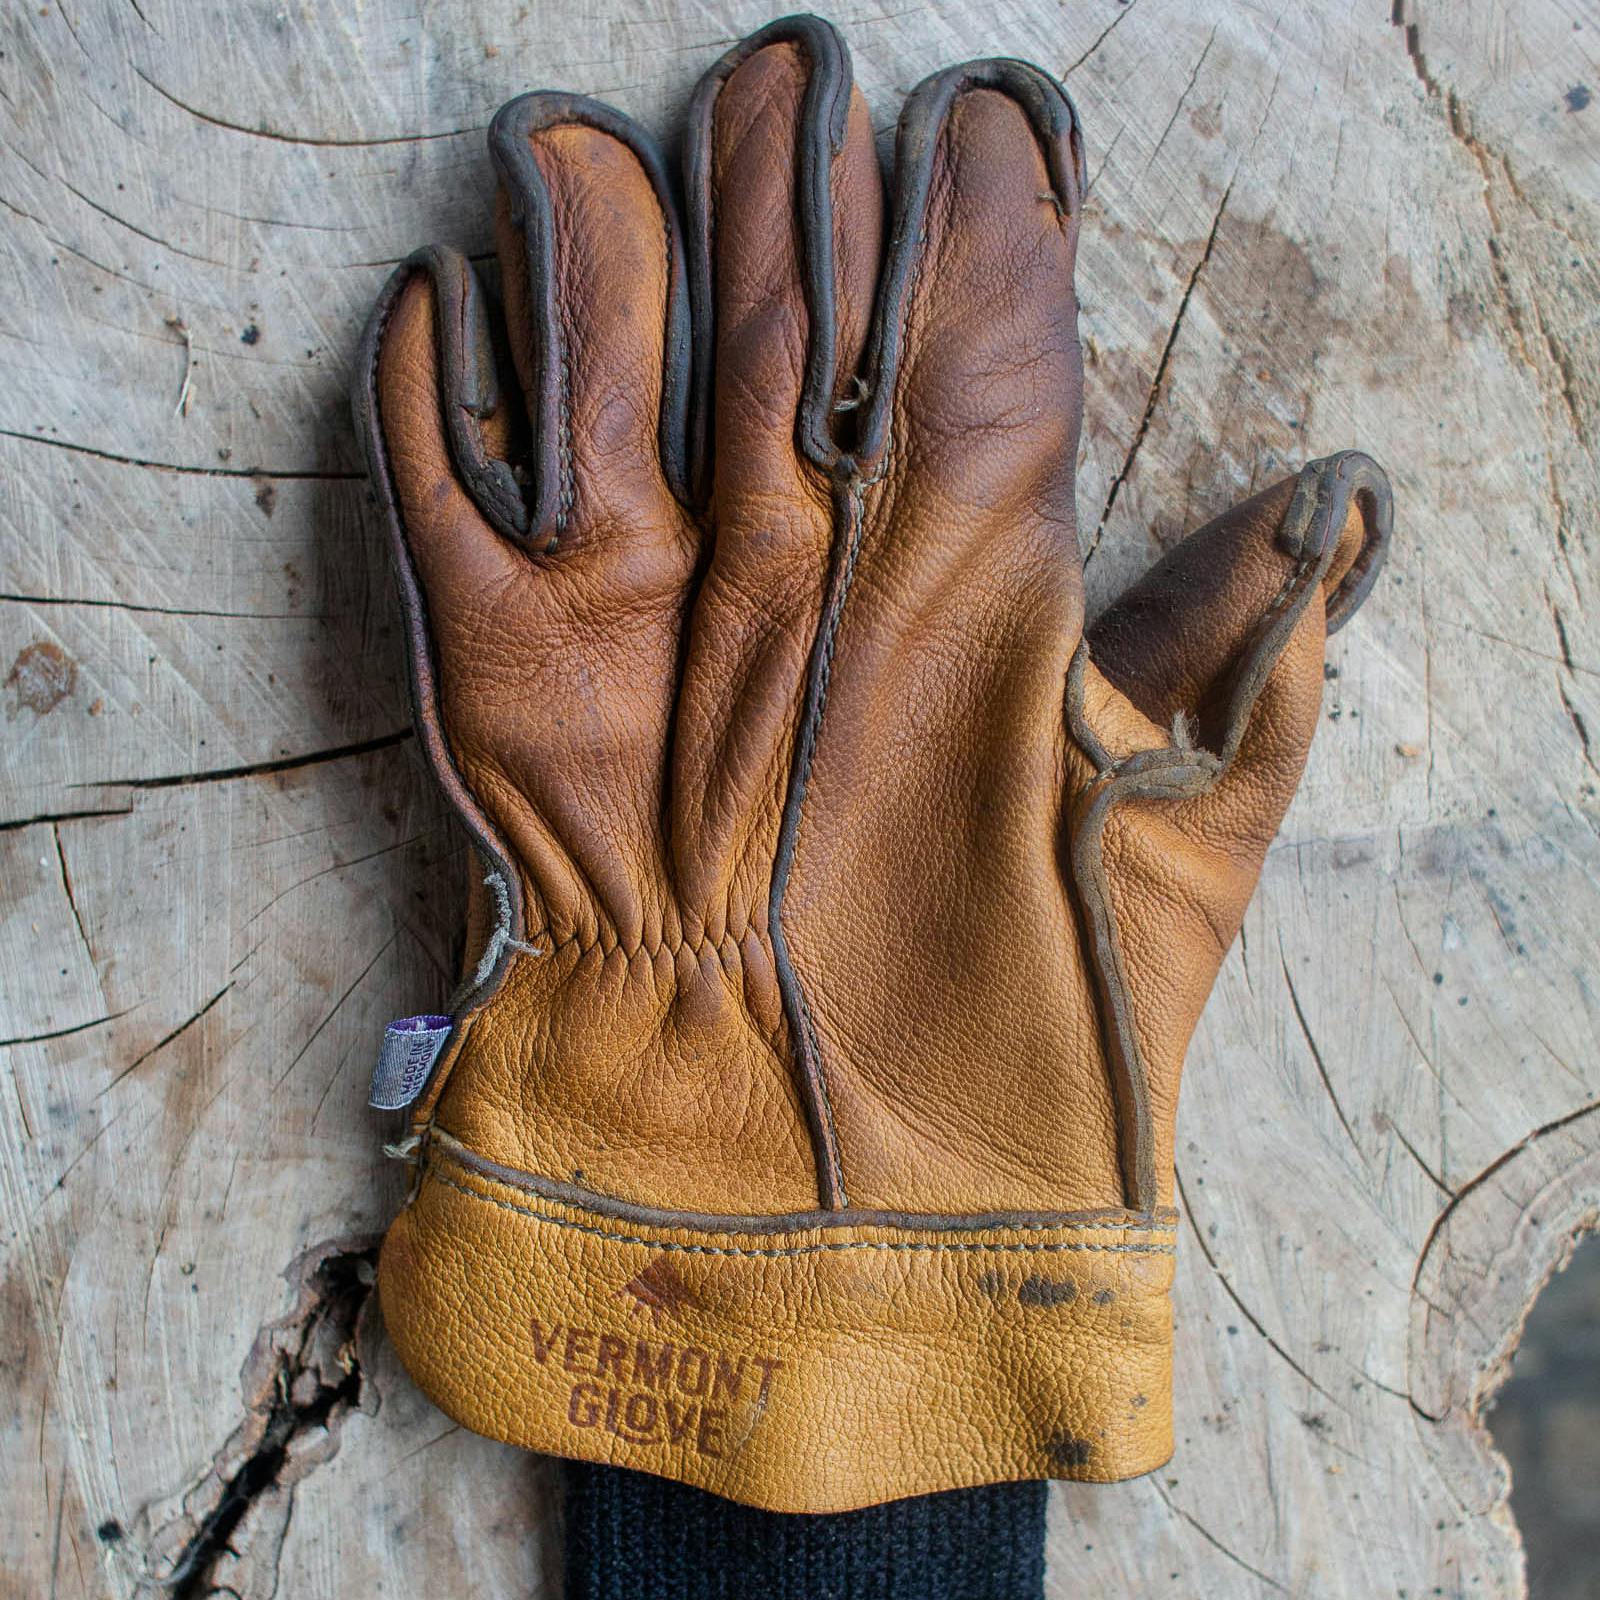 The Vermonter - Goatskin Work Gloves